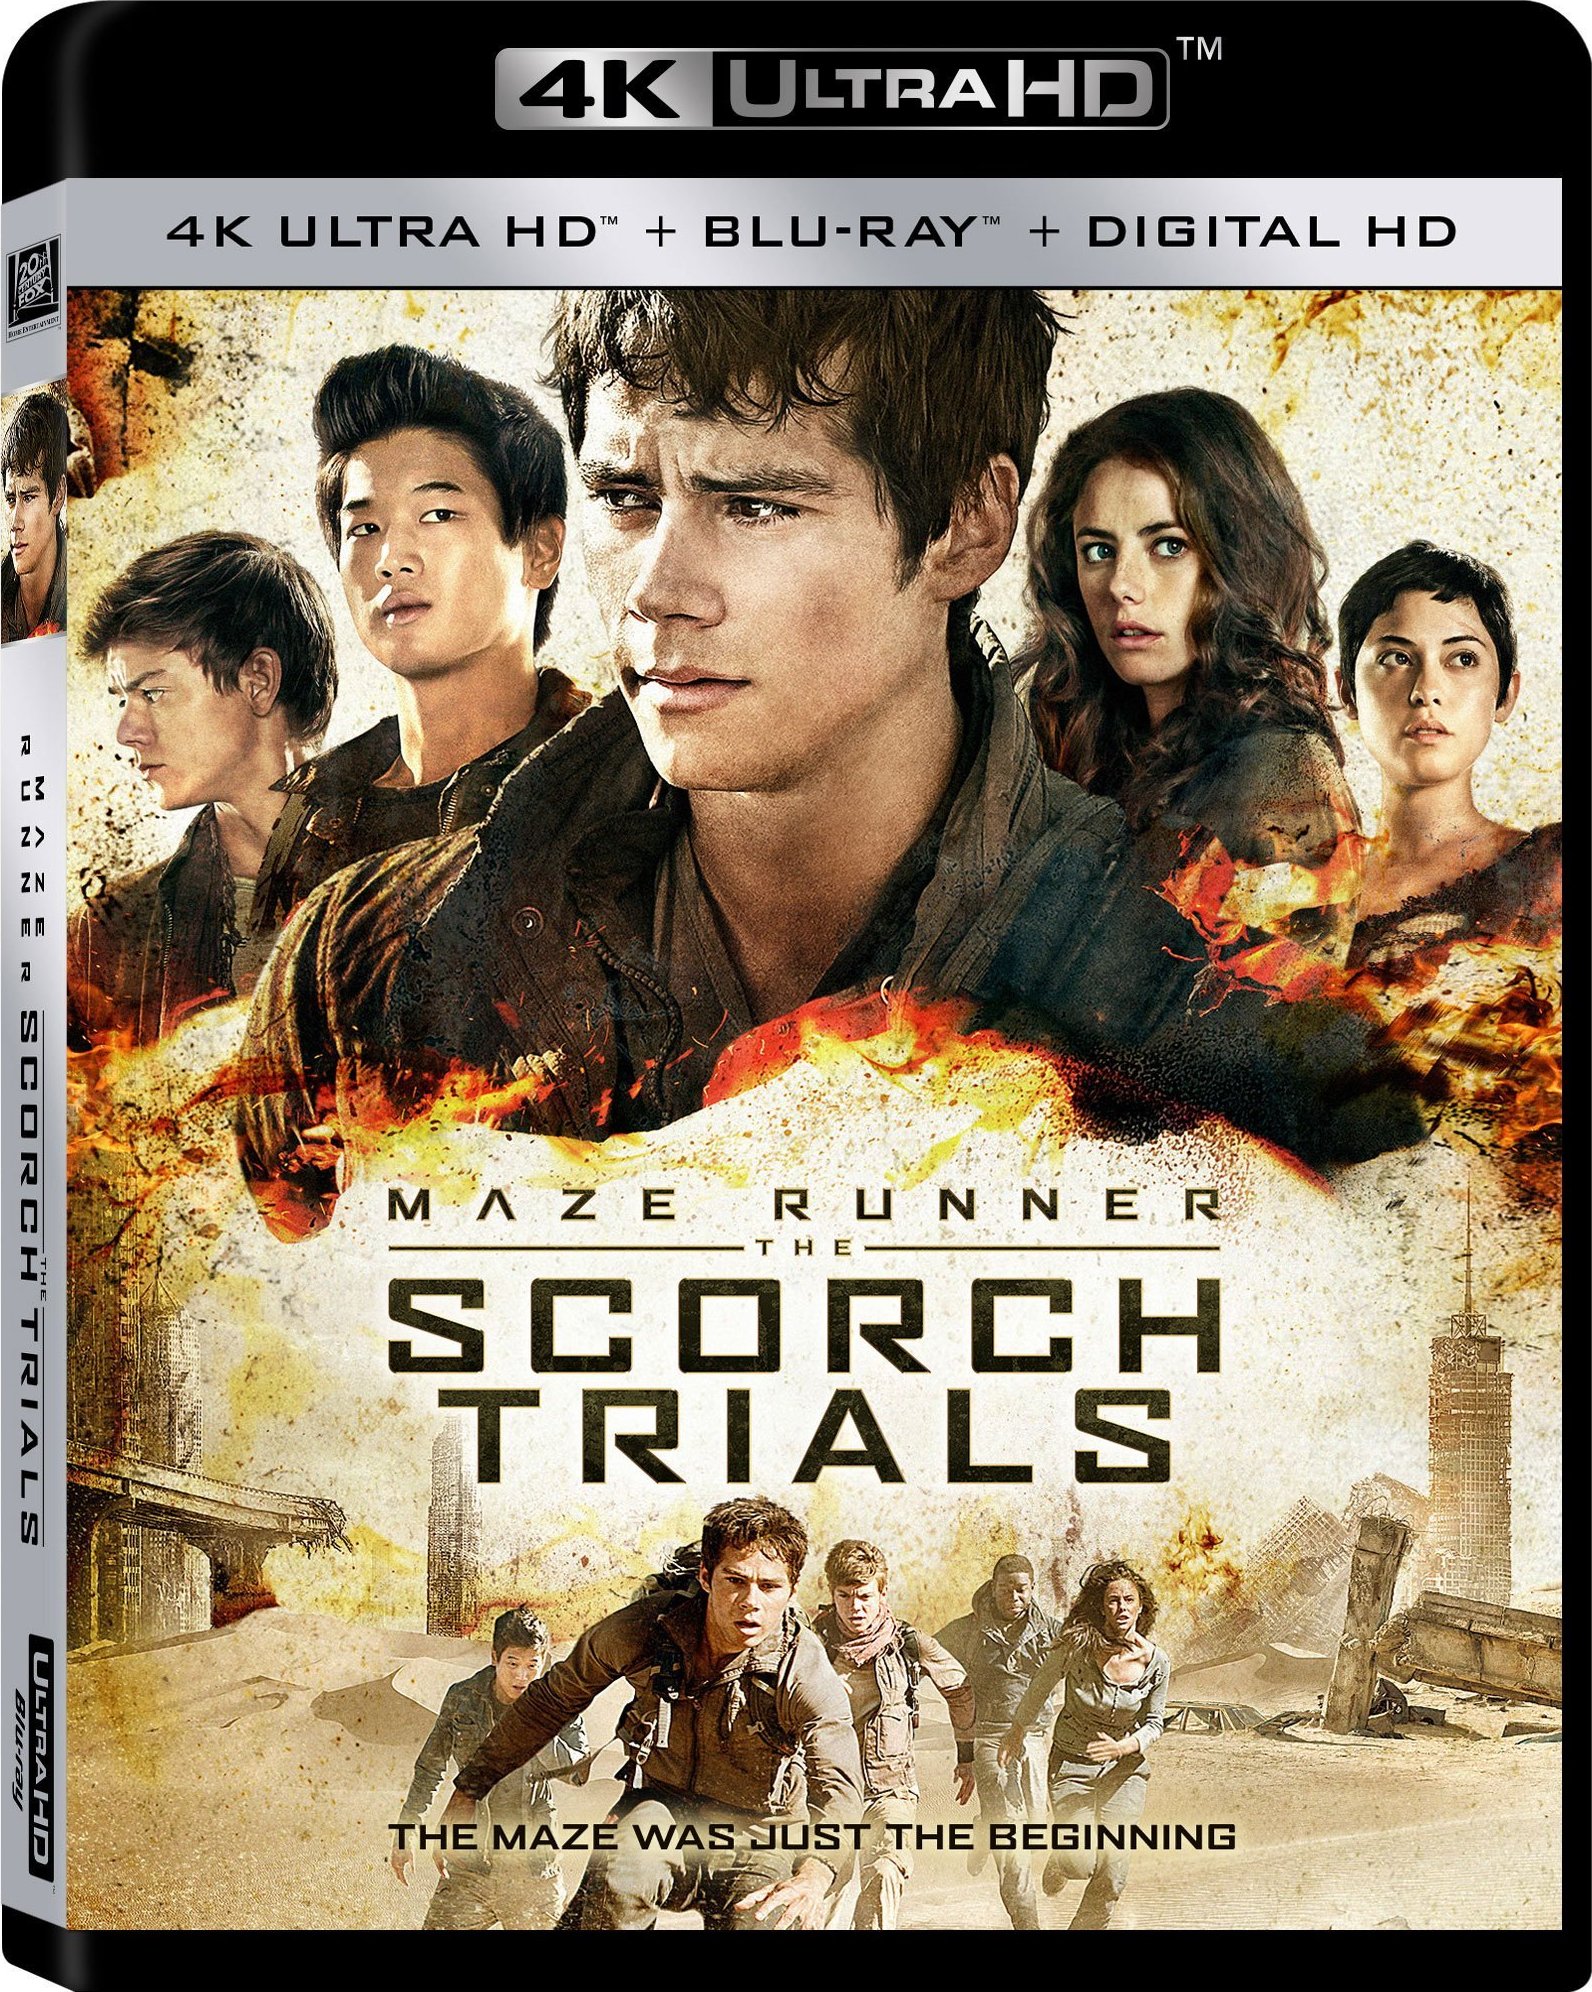 移动迷宫2：烧痕审判 [DIY次时代国语+简繁/简繁英双语字幕] Maze Runner The Scorch Trials 2015 EUR UHD Blu-ray 2160p HEVC DTS-HD MA 7.1-Pete@HDSky[59.59GB]